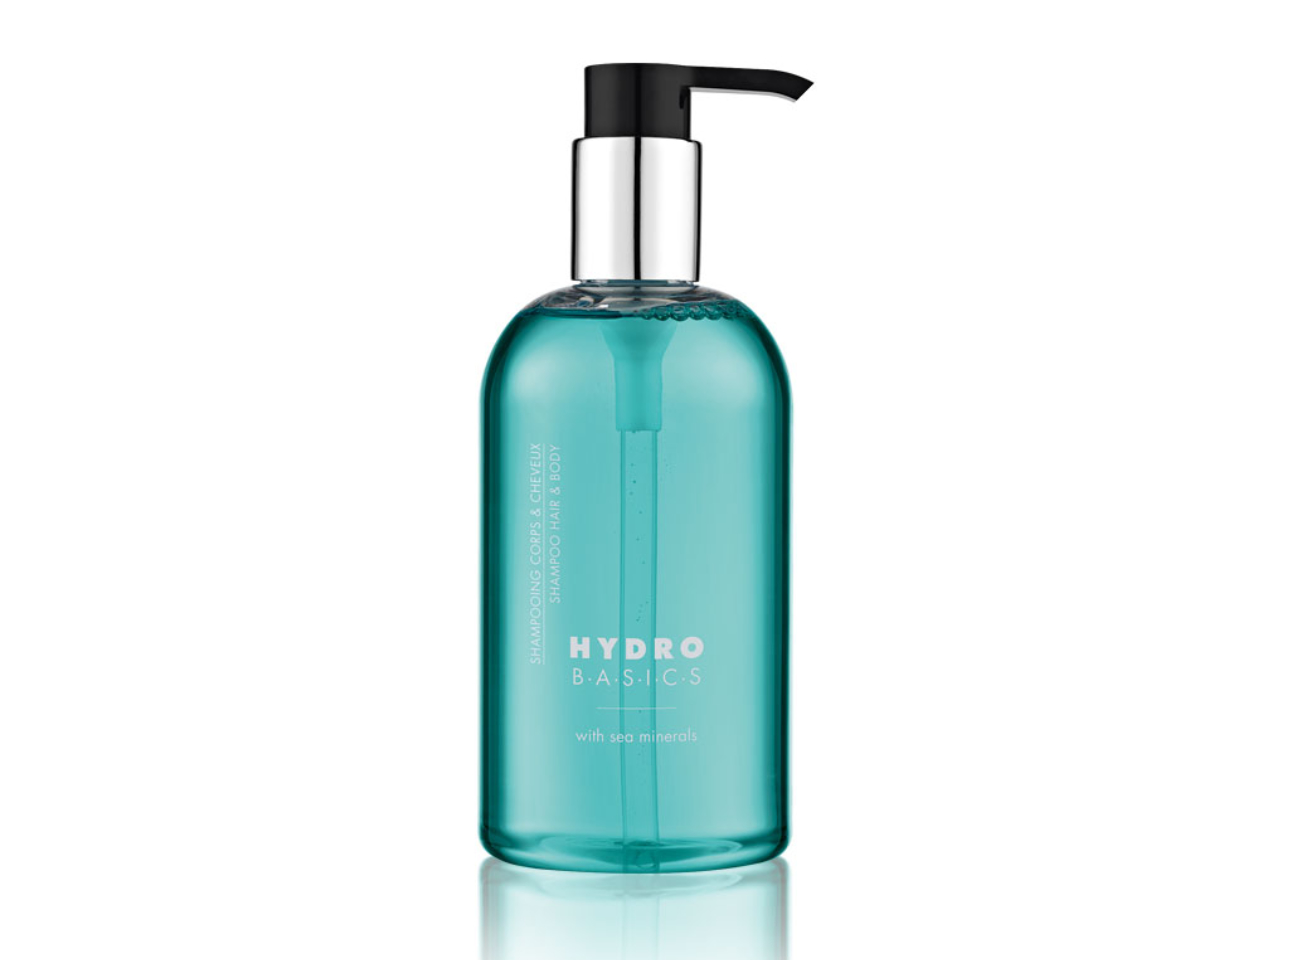 Hydro Basics Haar & Körper Shampoo - Pumpspender, 300ml